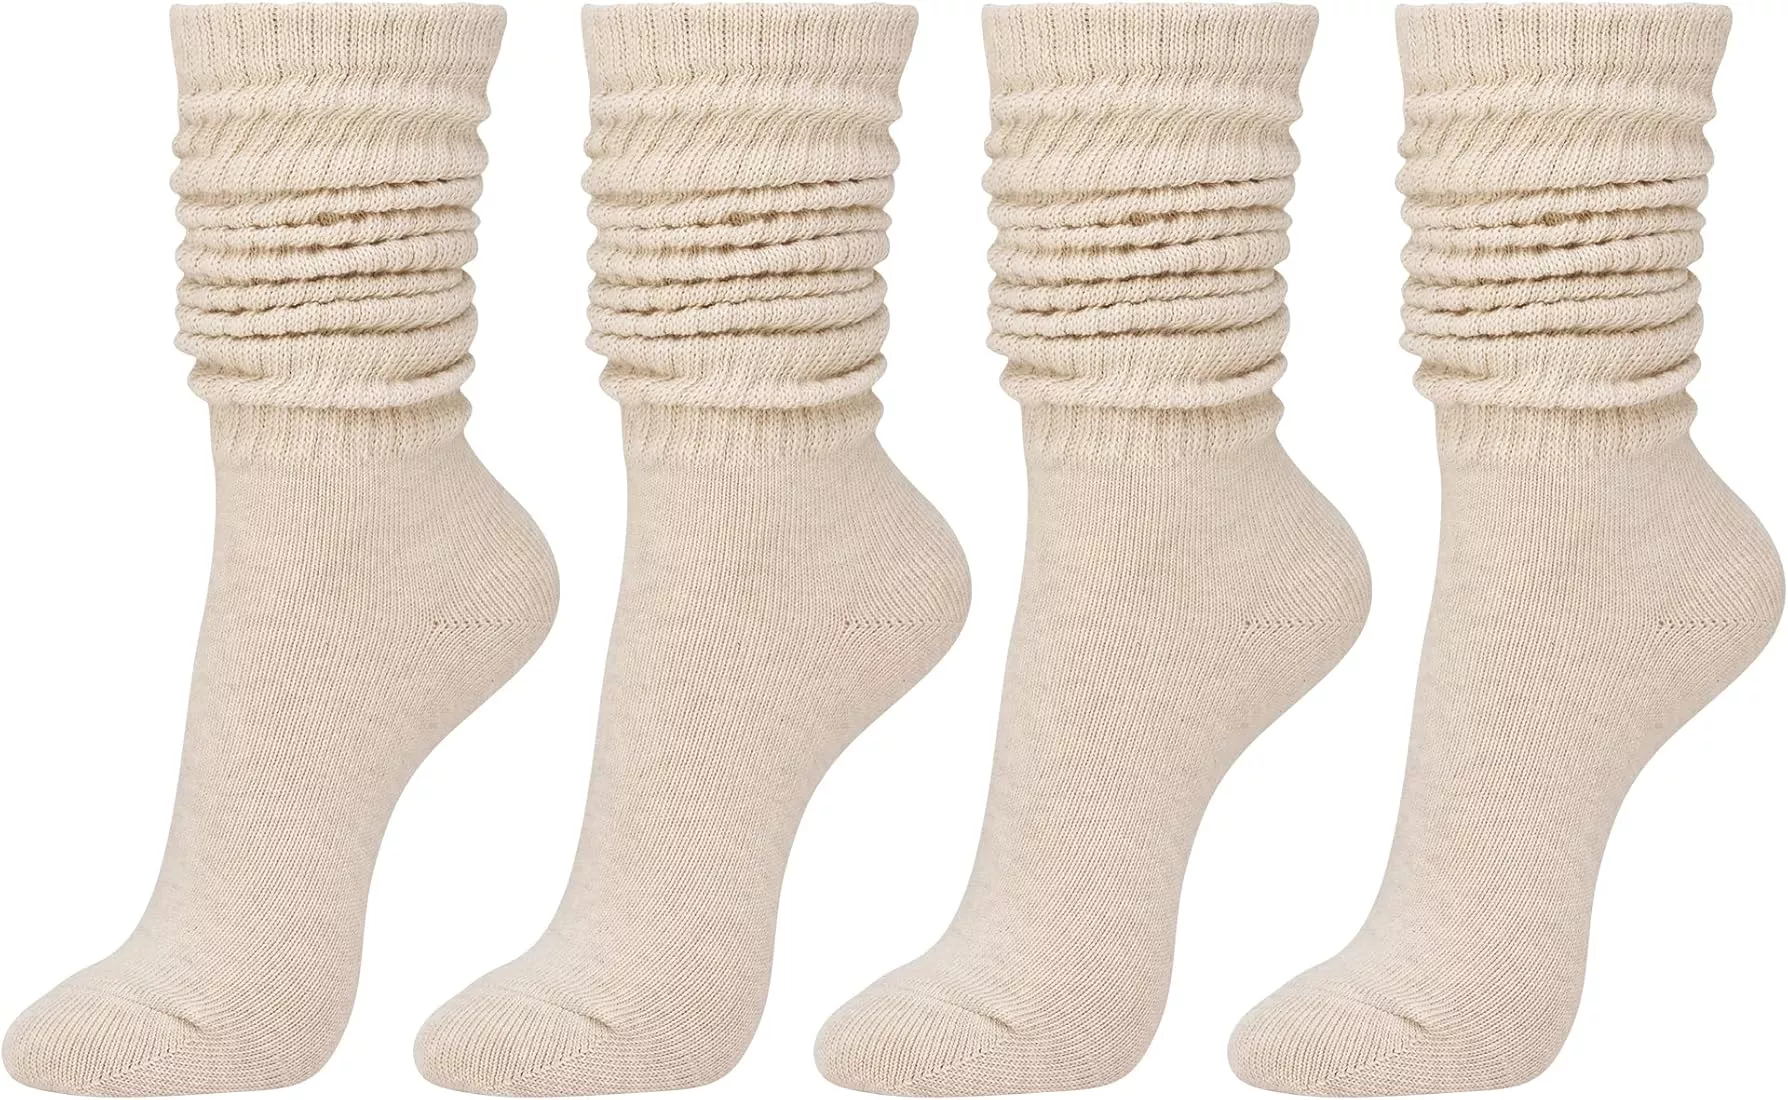 STYLEGAGA Women's Fall Winter Slouch Knit Socks Slouchy Women